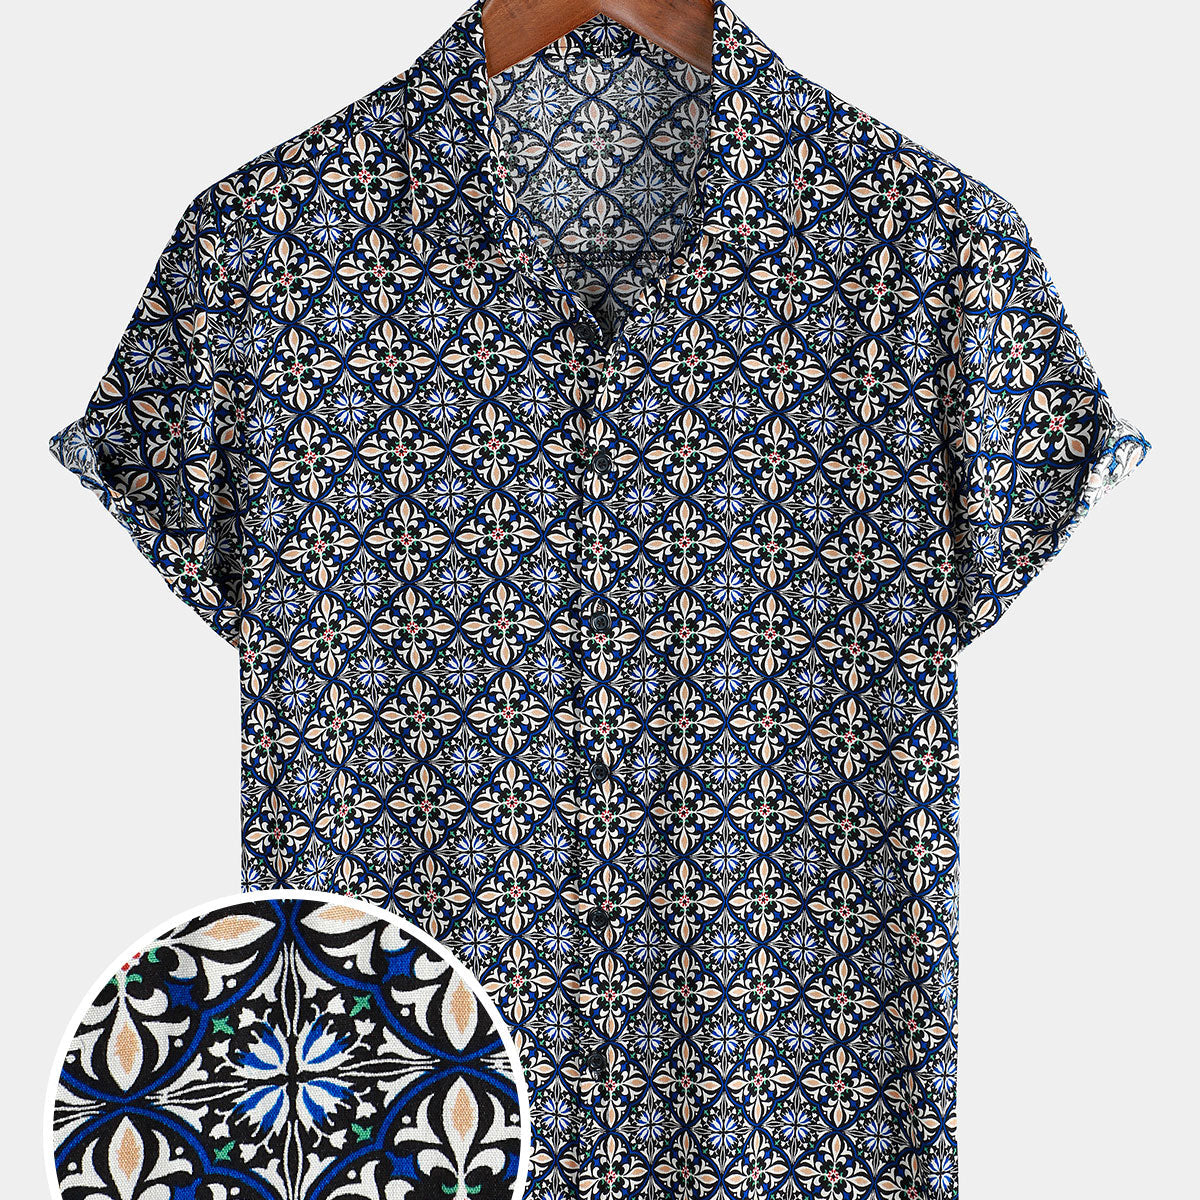 Men's Navy Blue Casual Button Up Short Sleeve Shirt